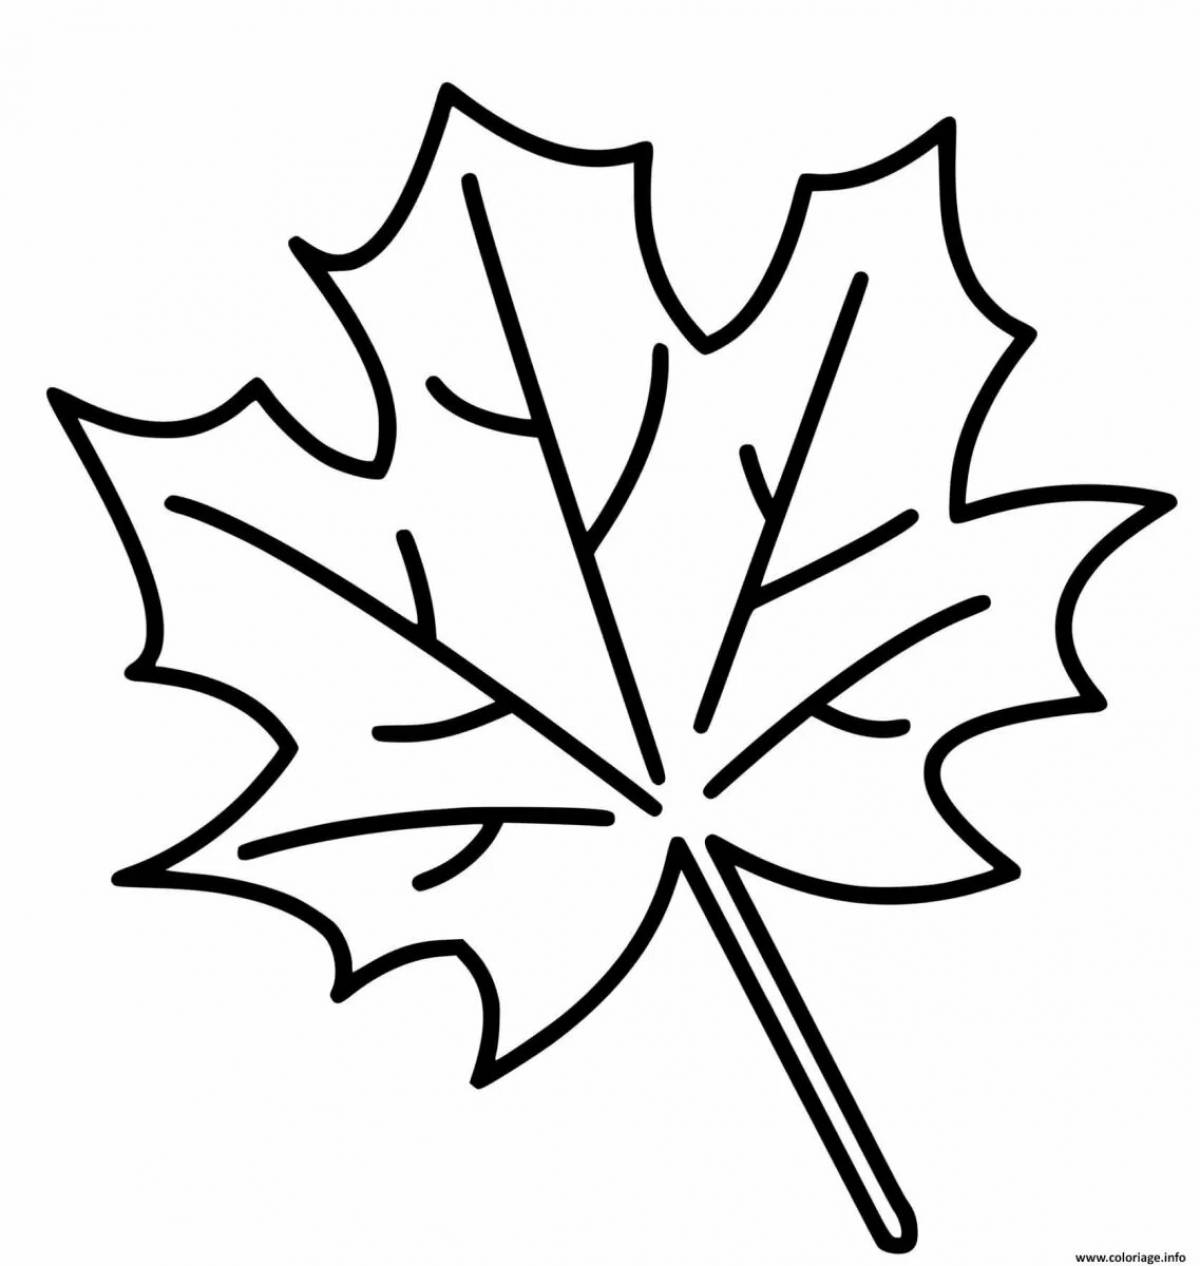 Maple leaf #27